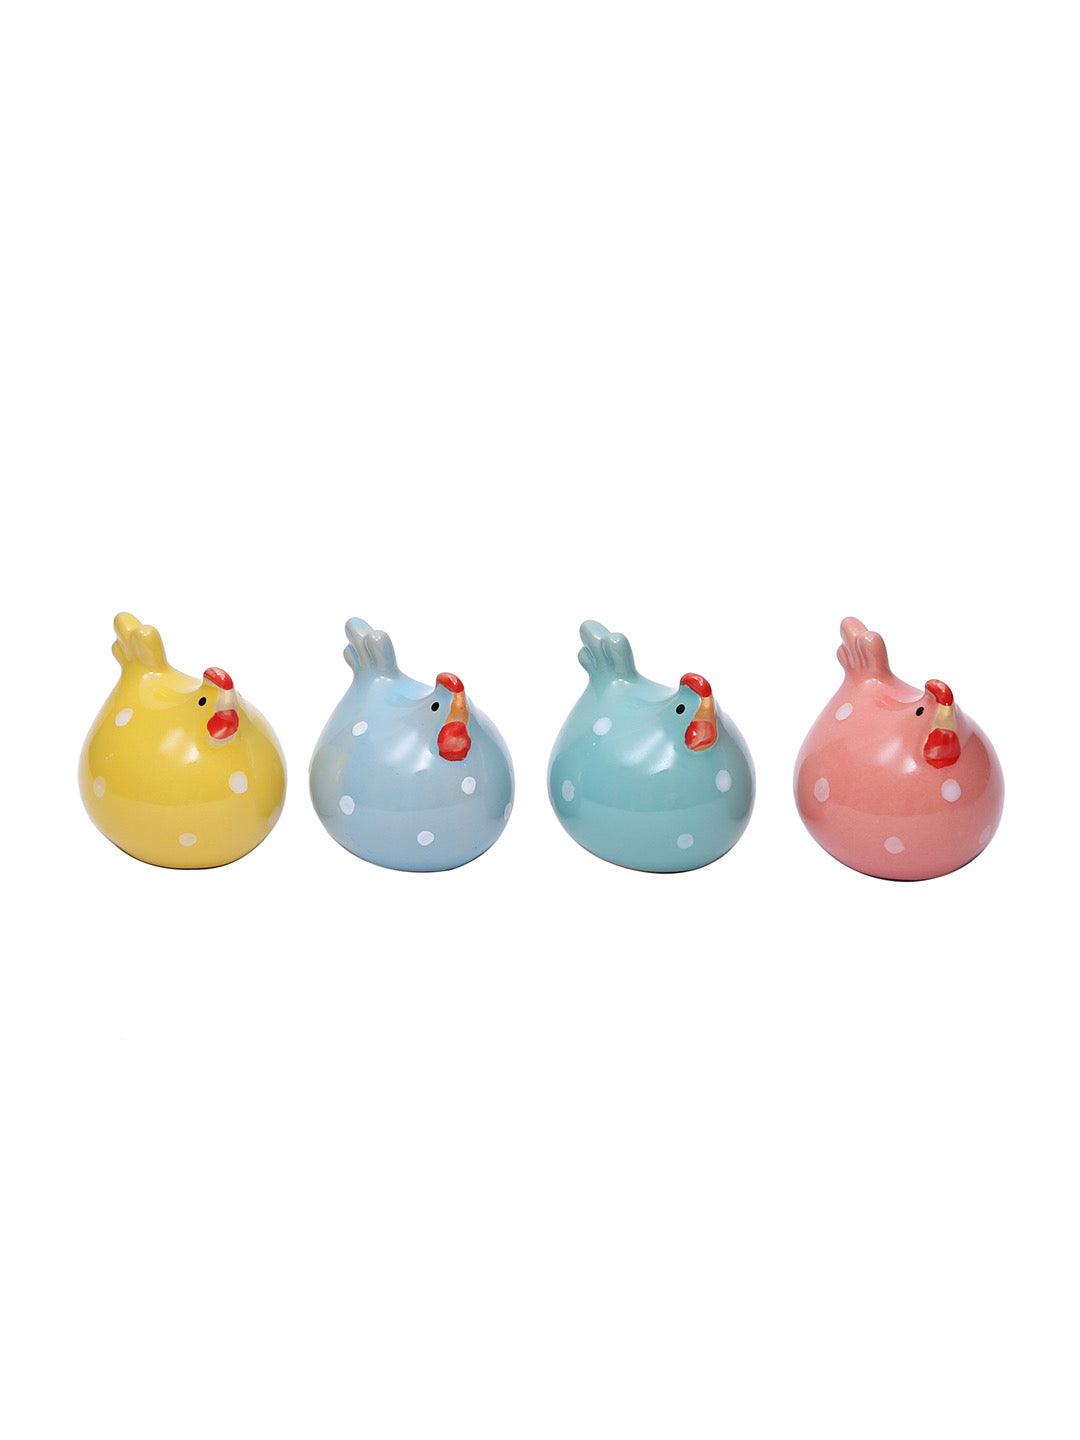 Enchanting Colourful Chicken Show Pieces Ceramic Set - Default Title (SHOW19550)